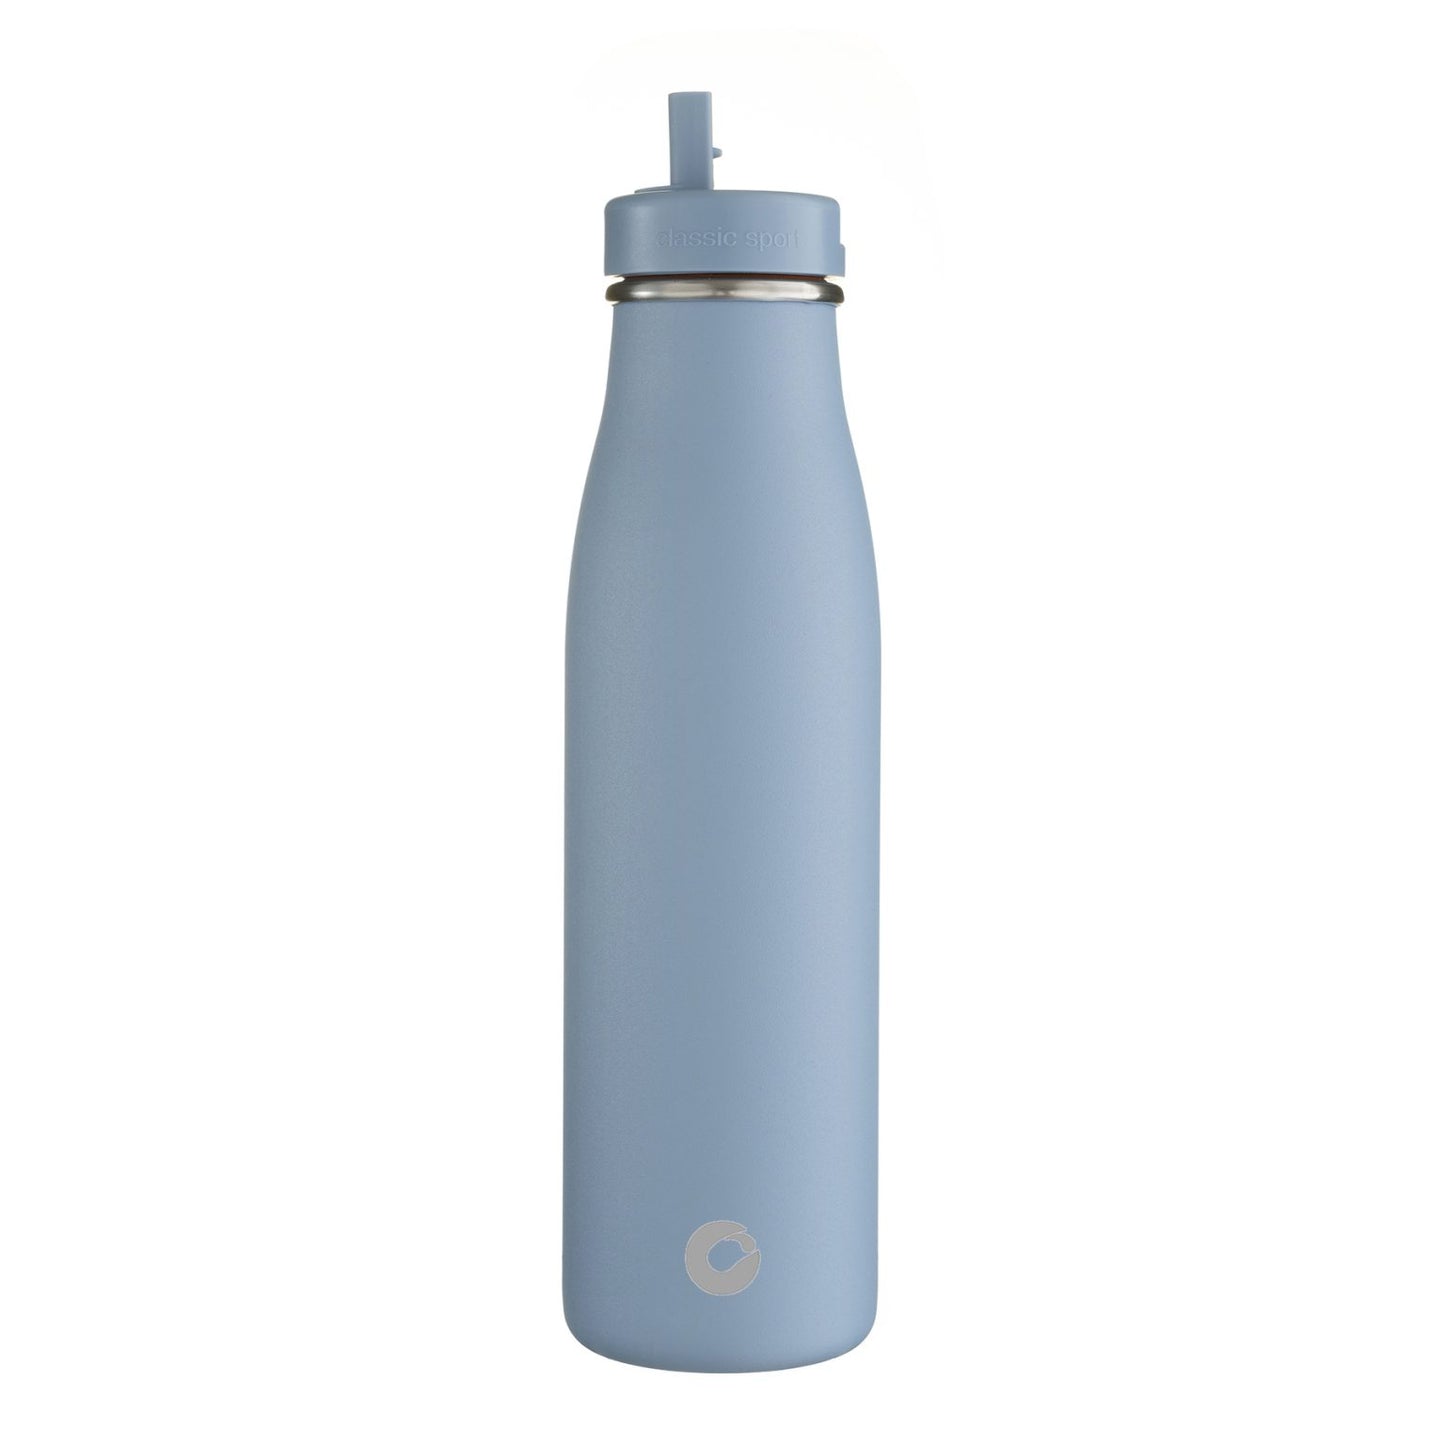 Botl 500ml evolution stainless steel bottle - Ocean